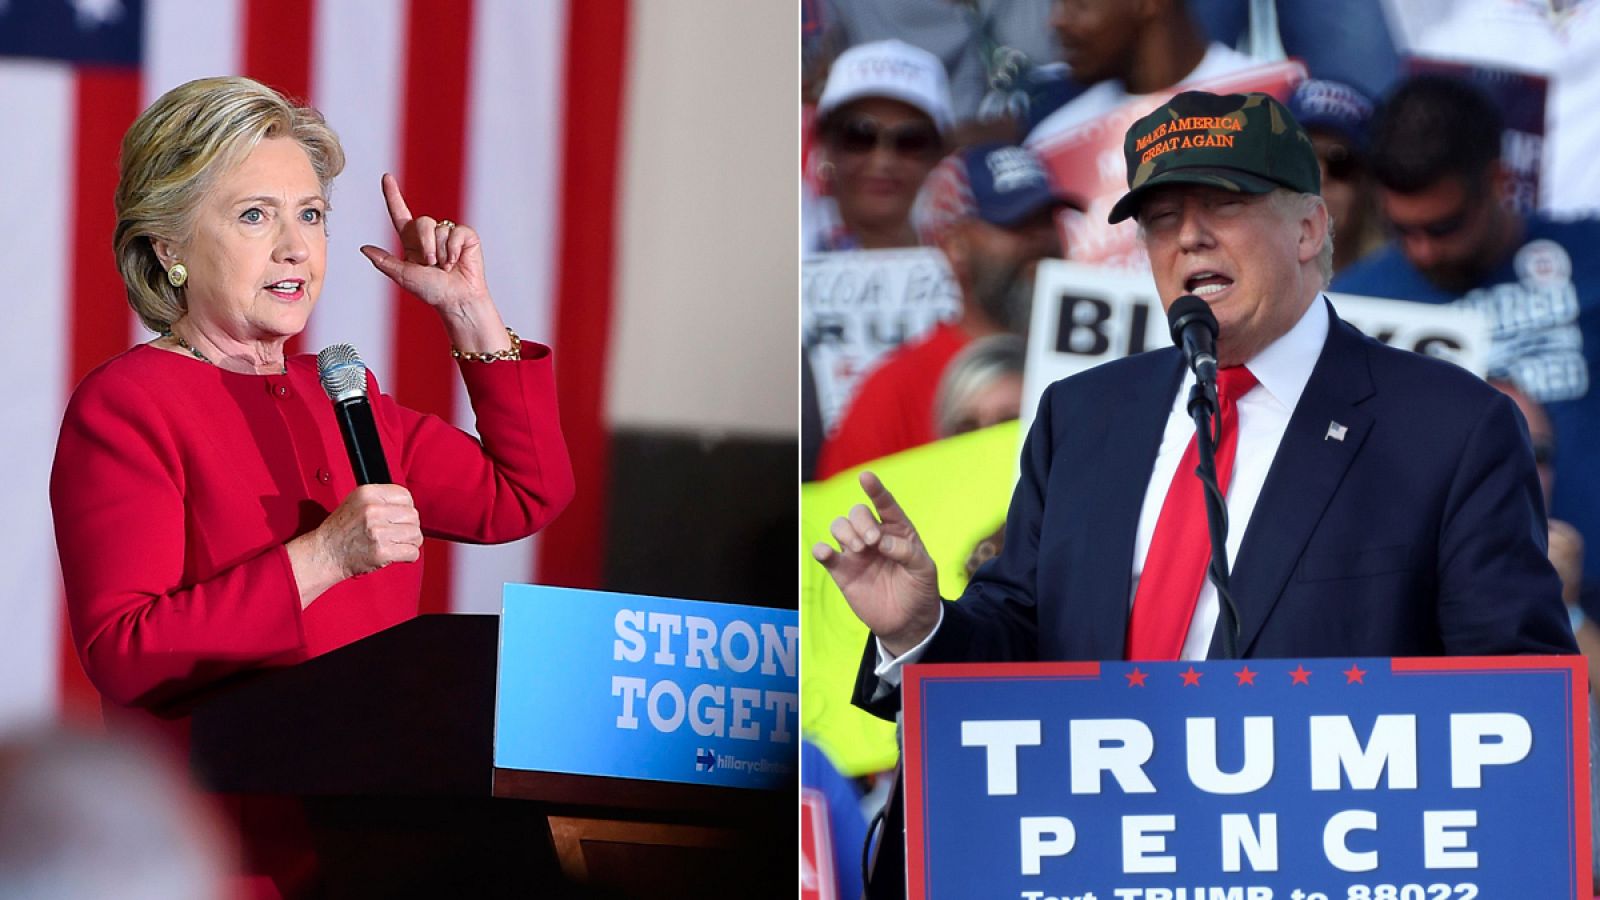 Los candidatos a la Casa Blanca, Hillary Clinton y Donald Trump, durante sus actos de campaña en Florida.